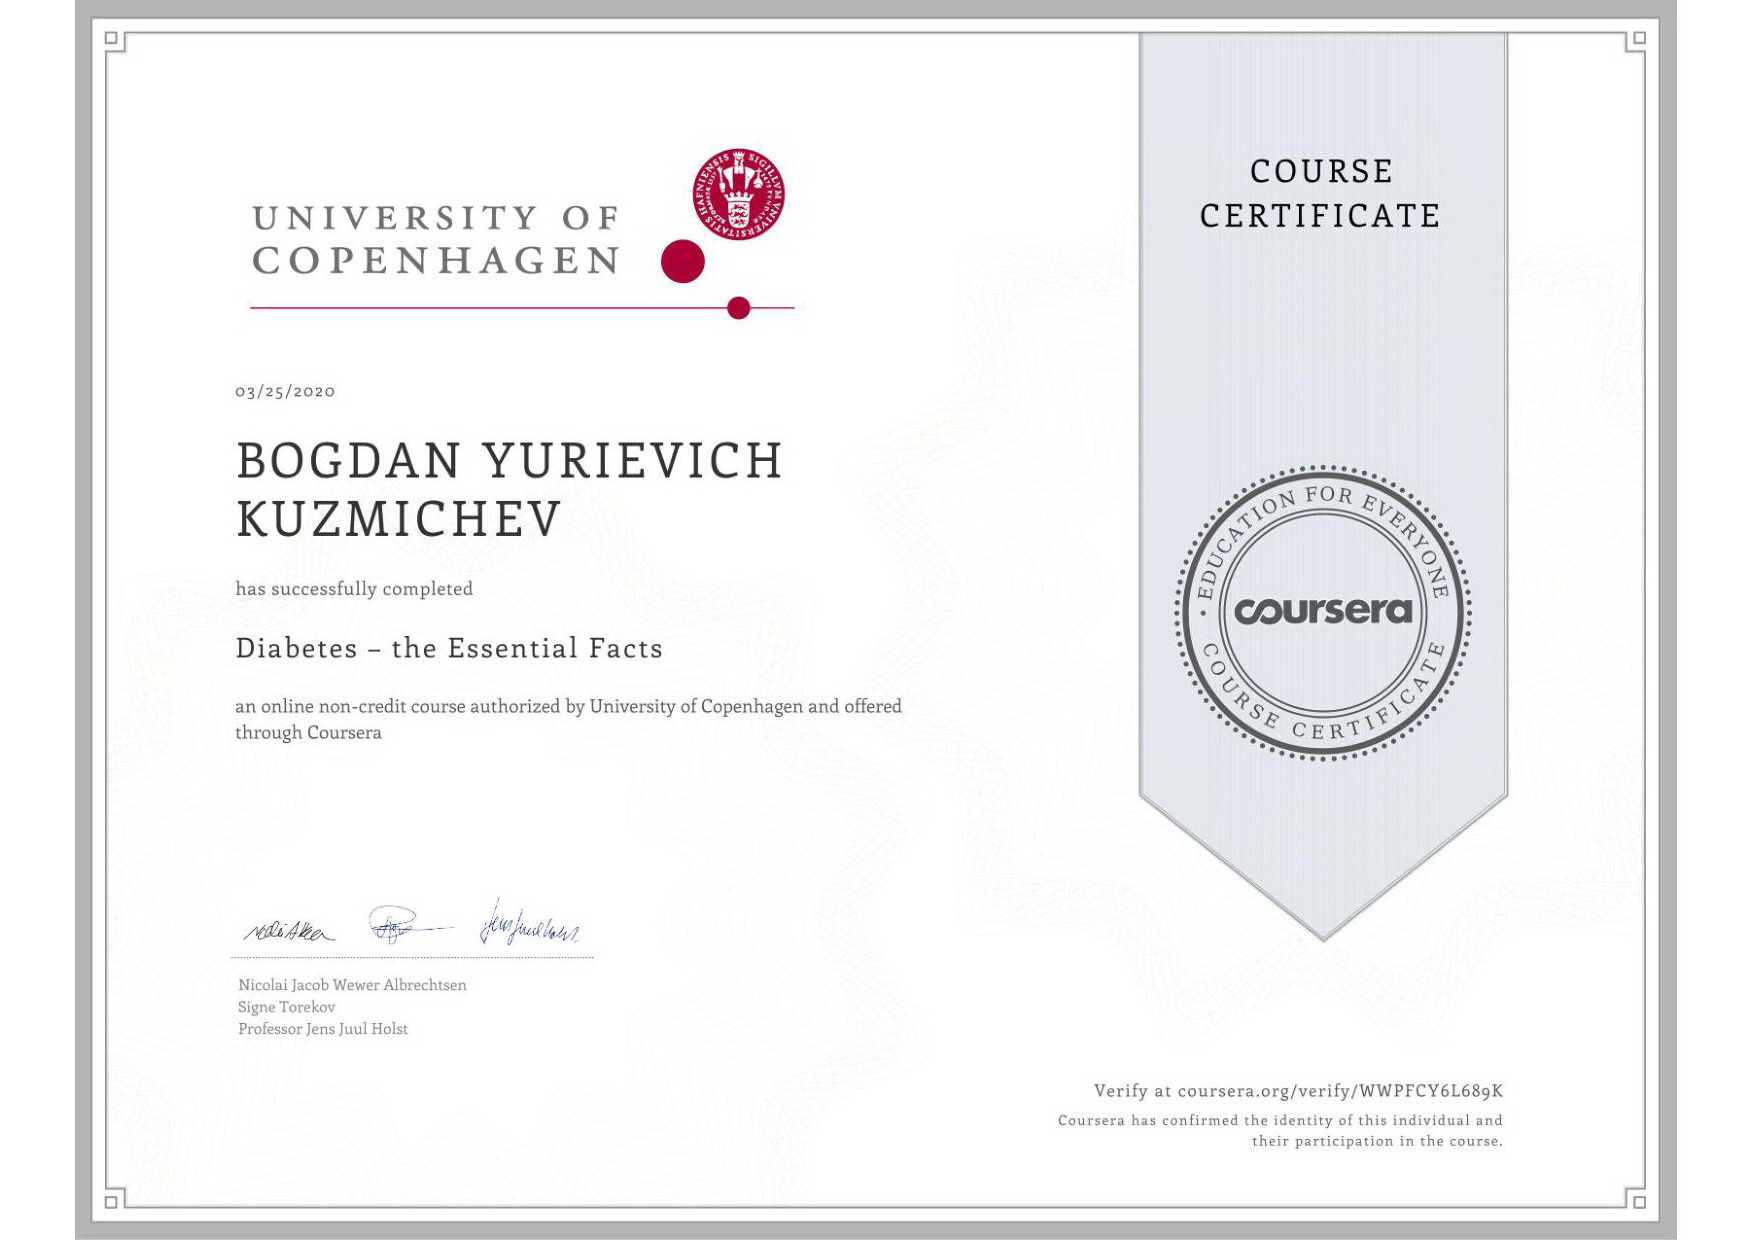 Certificate from University of Copenhagen!